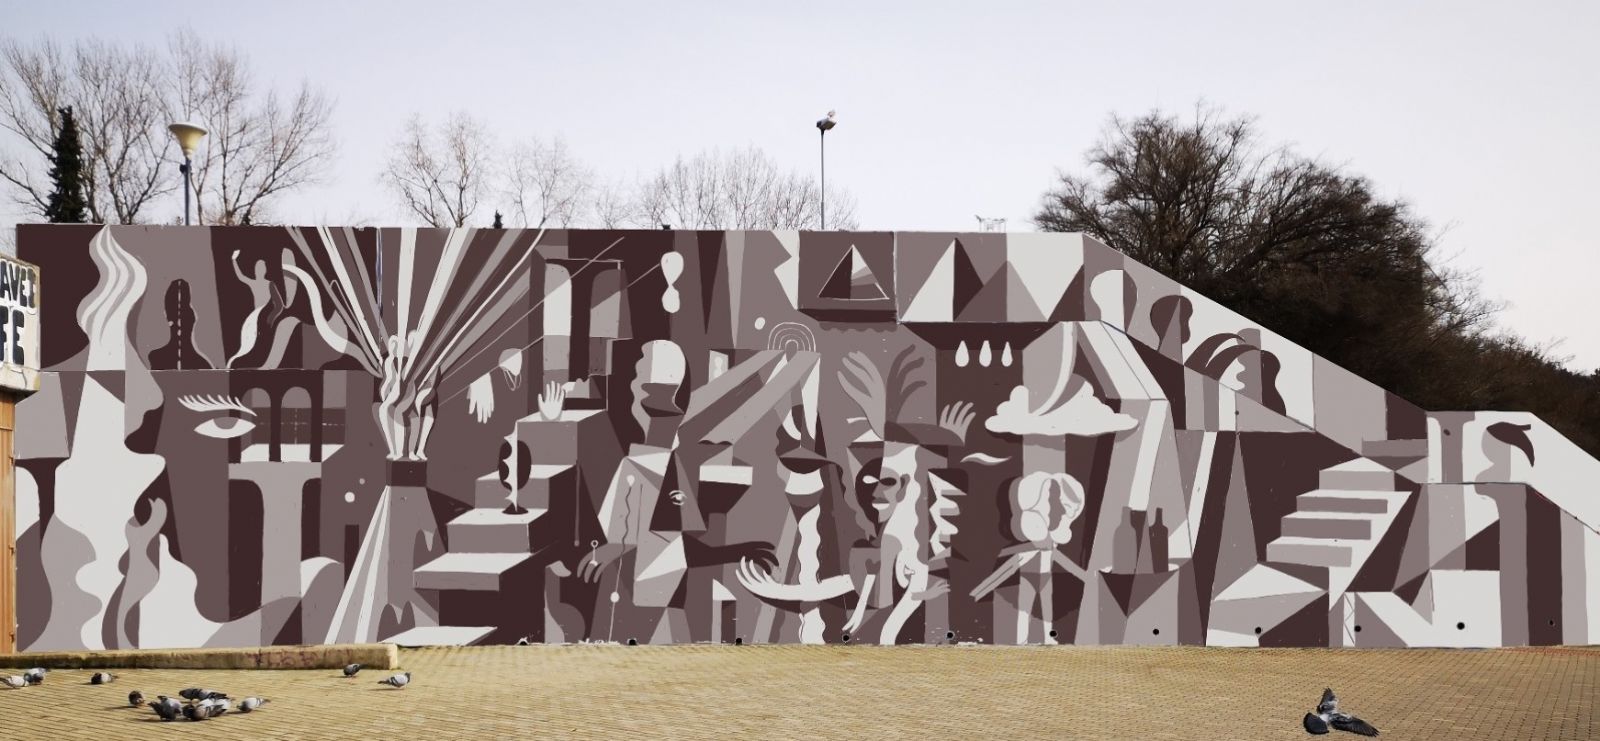 Nový mural na Vltavské v sobě ukryje odkazy na nedaleká výtvarná díla